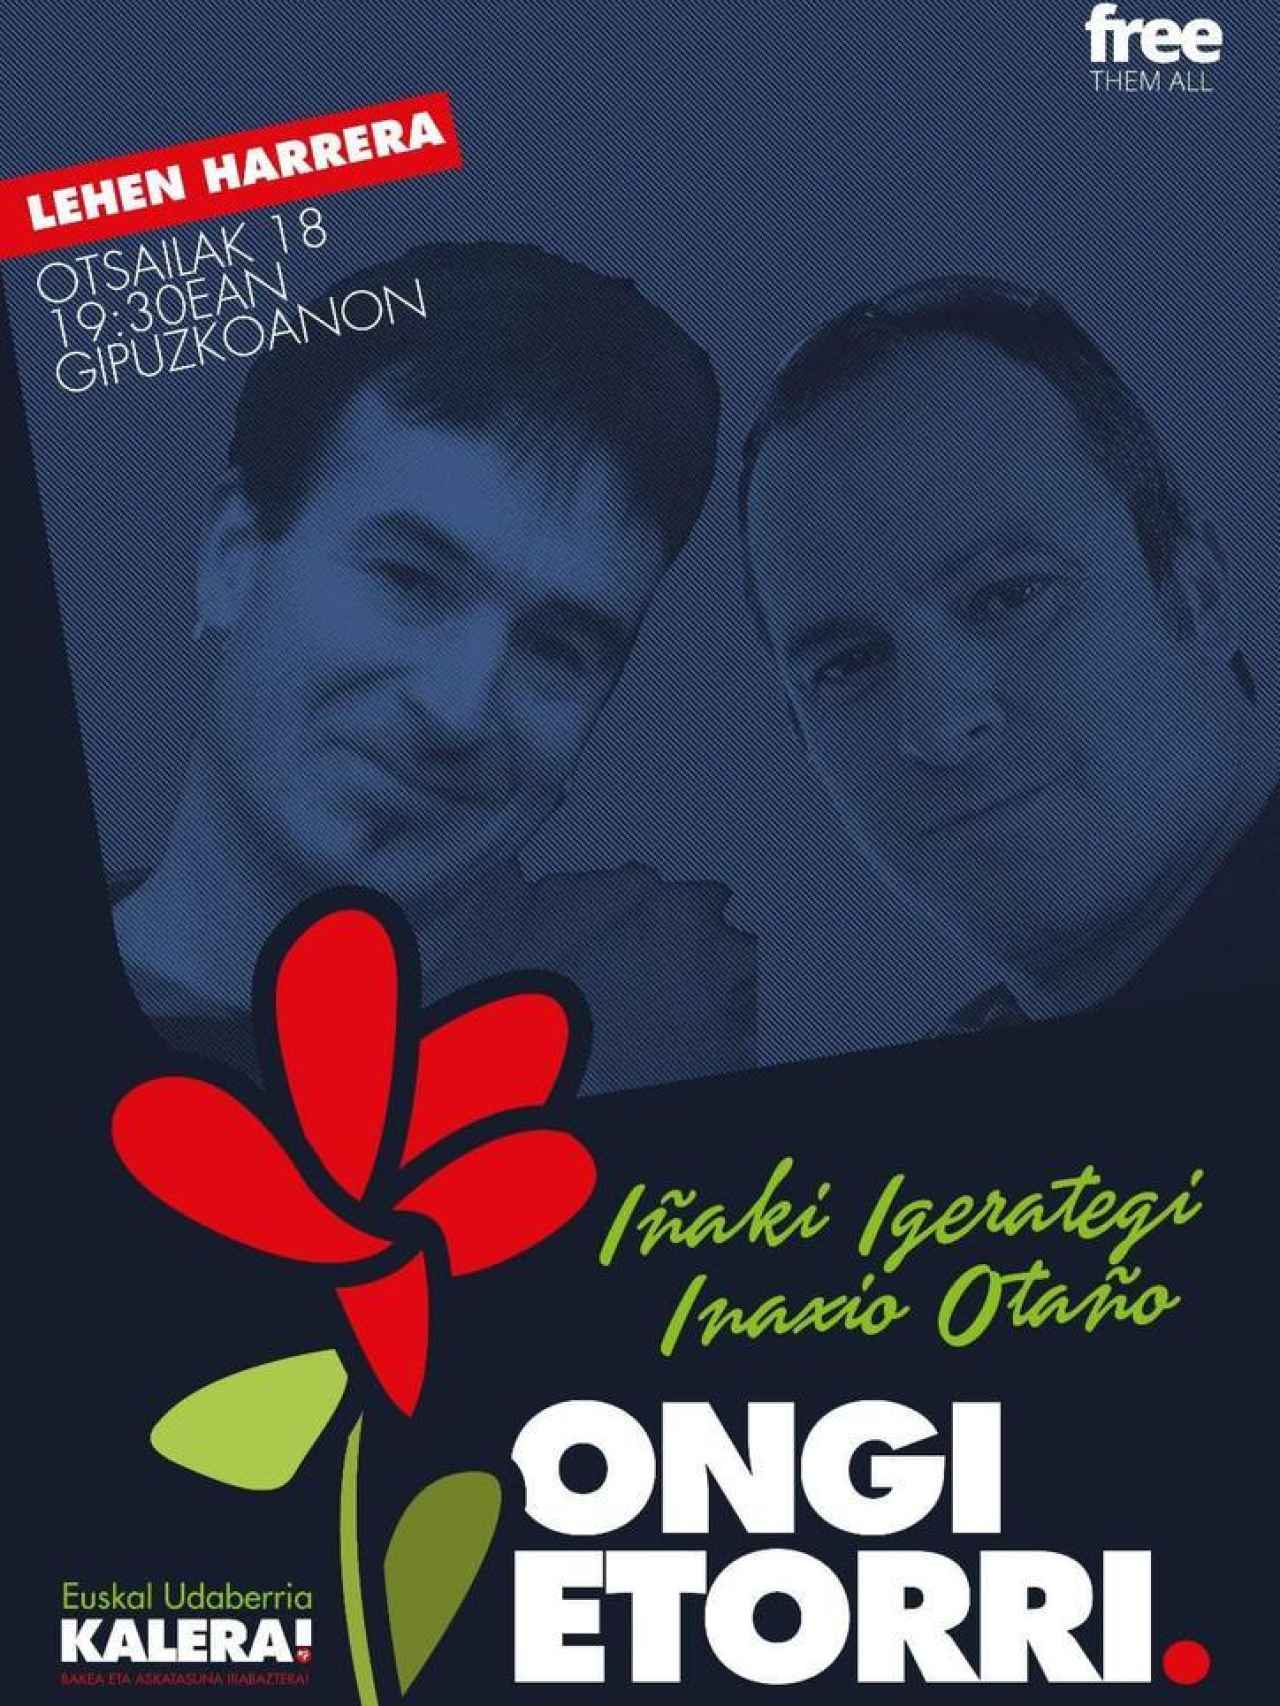 Cartel promocional del acto de bienvenida a Igerategi y Otaño.